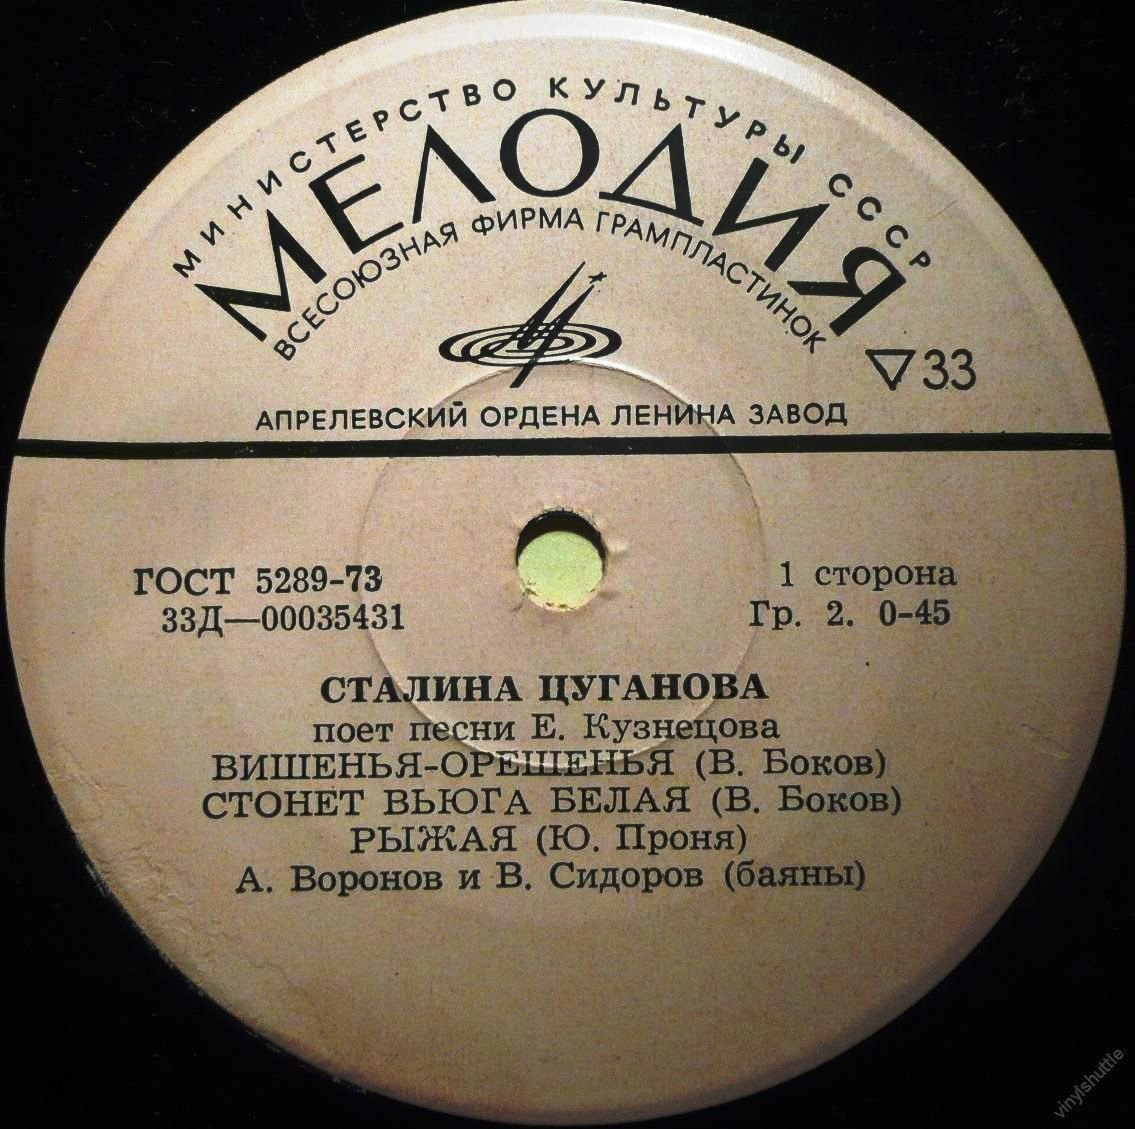 Сталина Цуганова поёт песни Е. Кузнецова